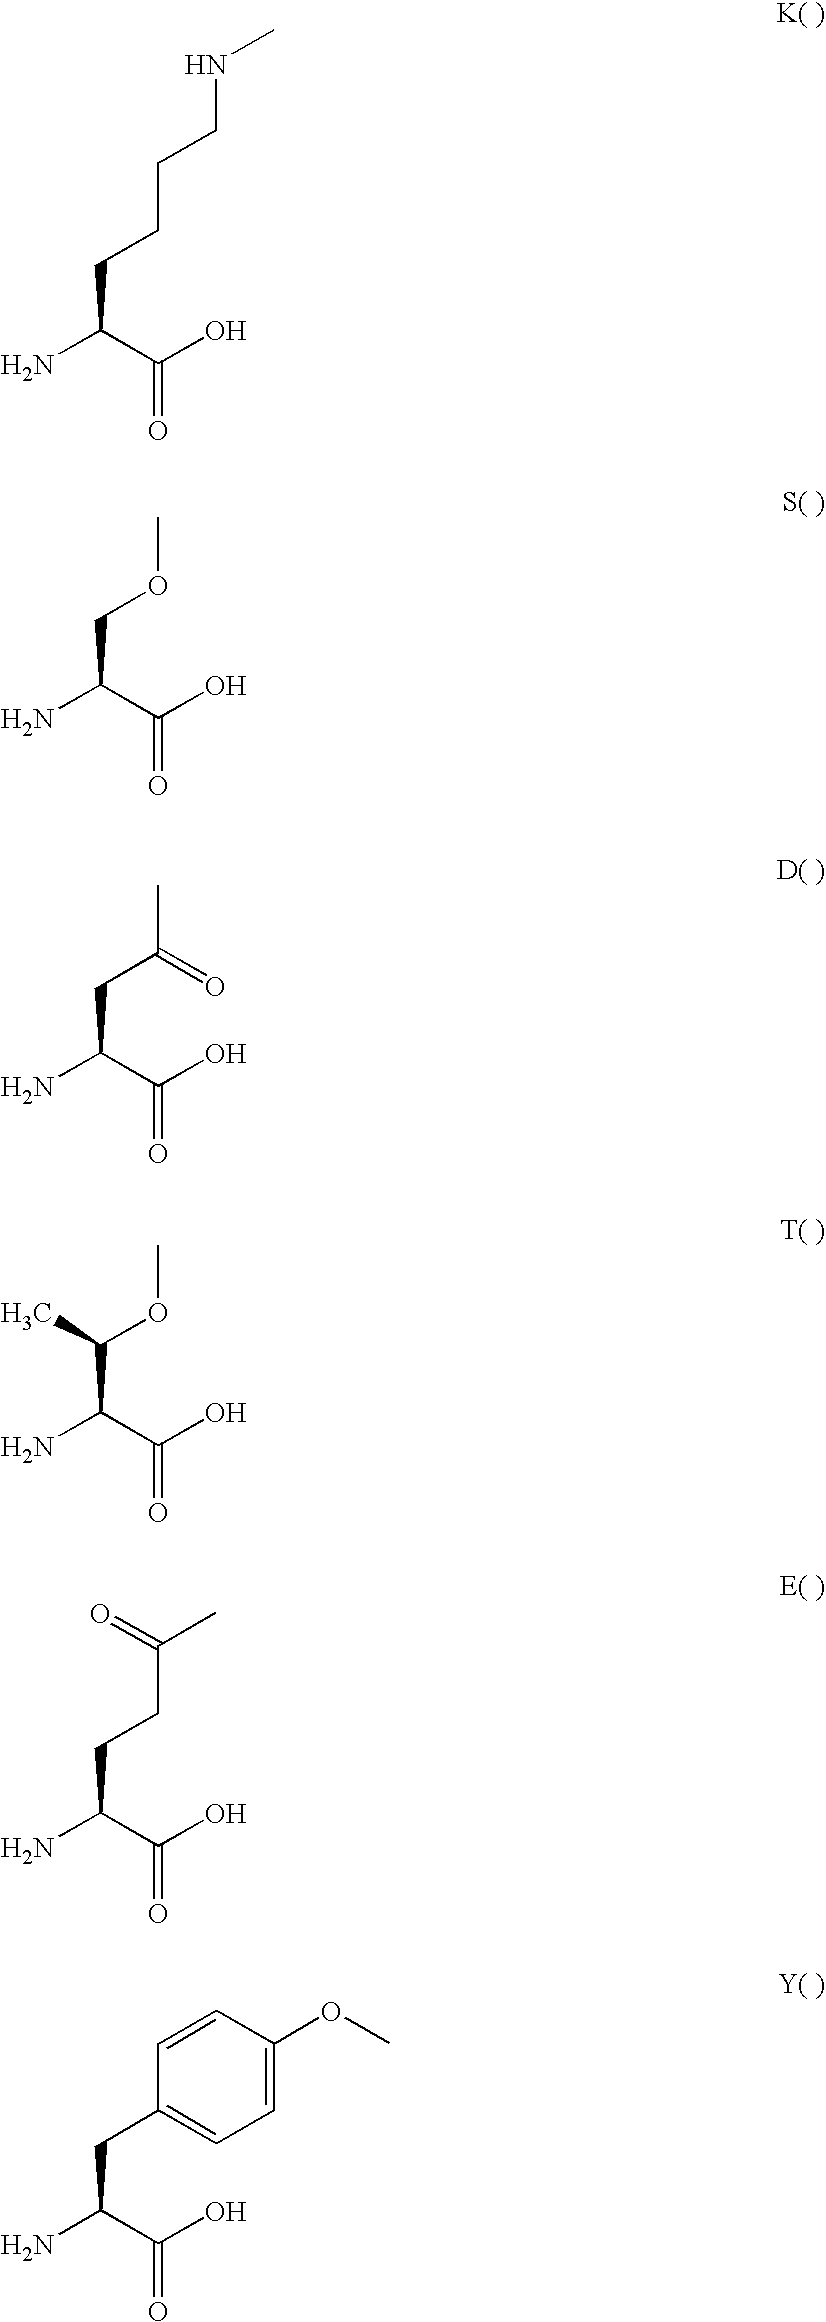 GLP-2 derivatives